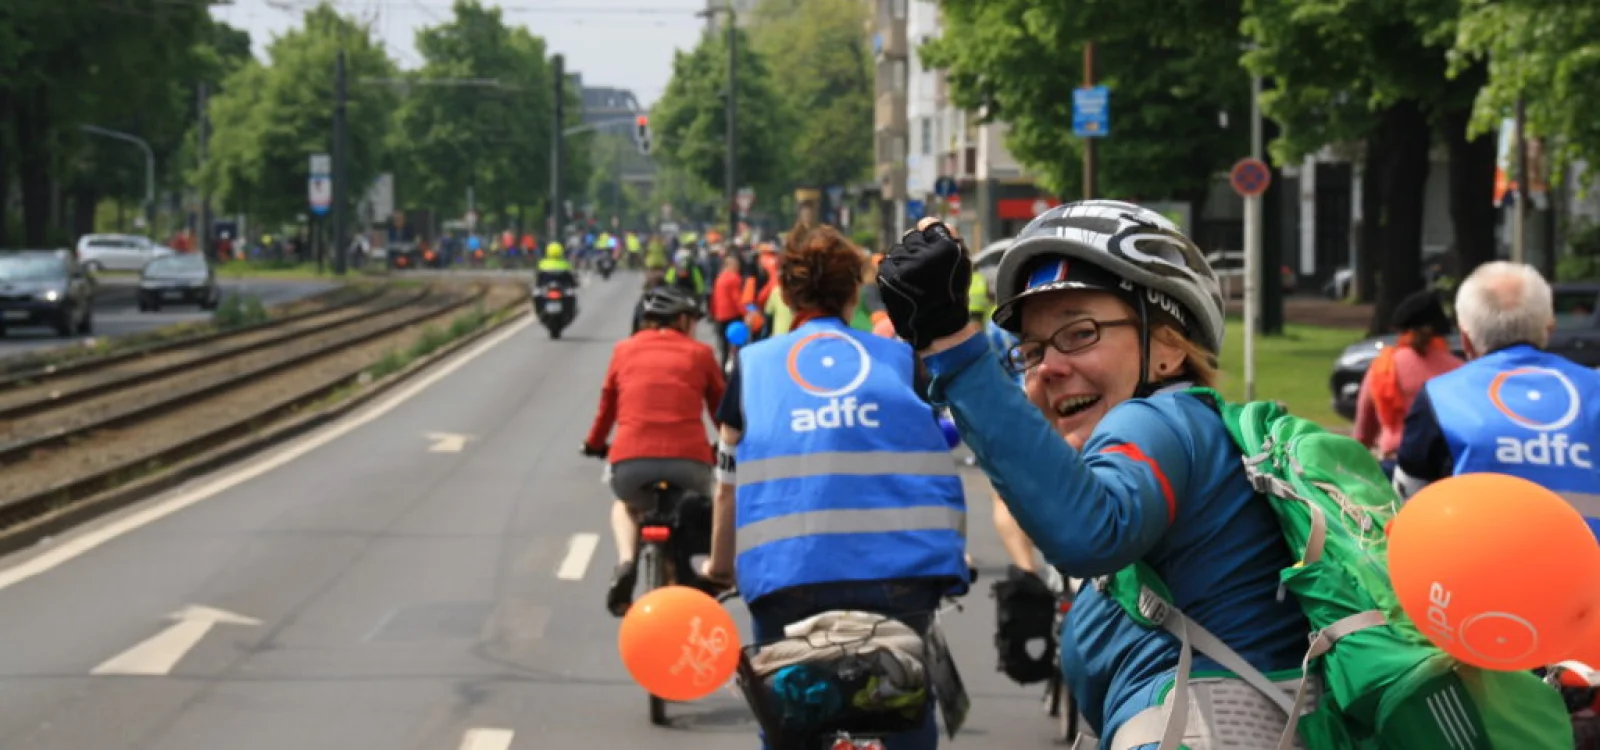 Frau auf Fahrrad bei Sternfahrt in Düsseldorf reckt die Faust